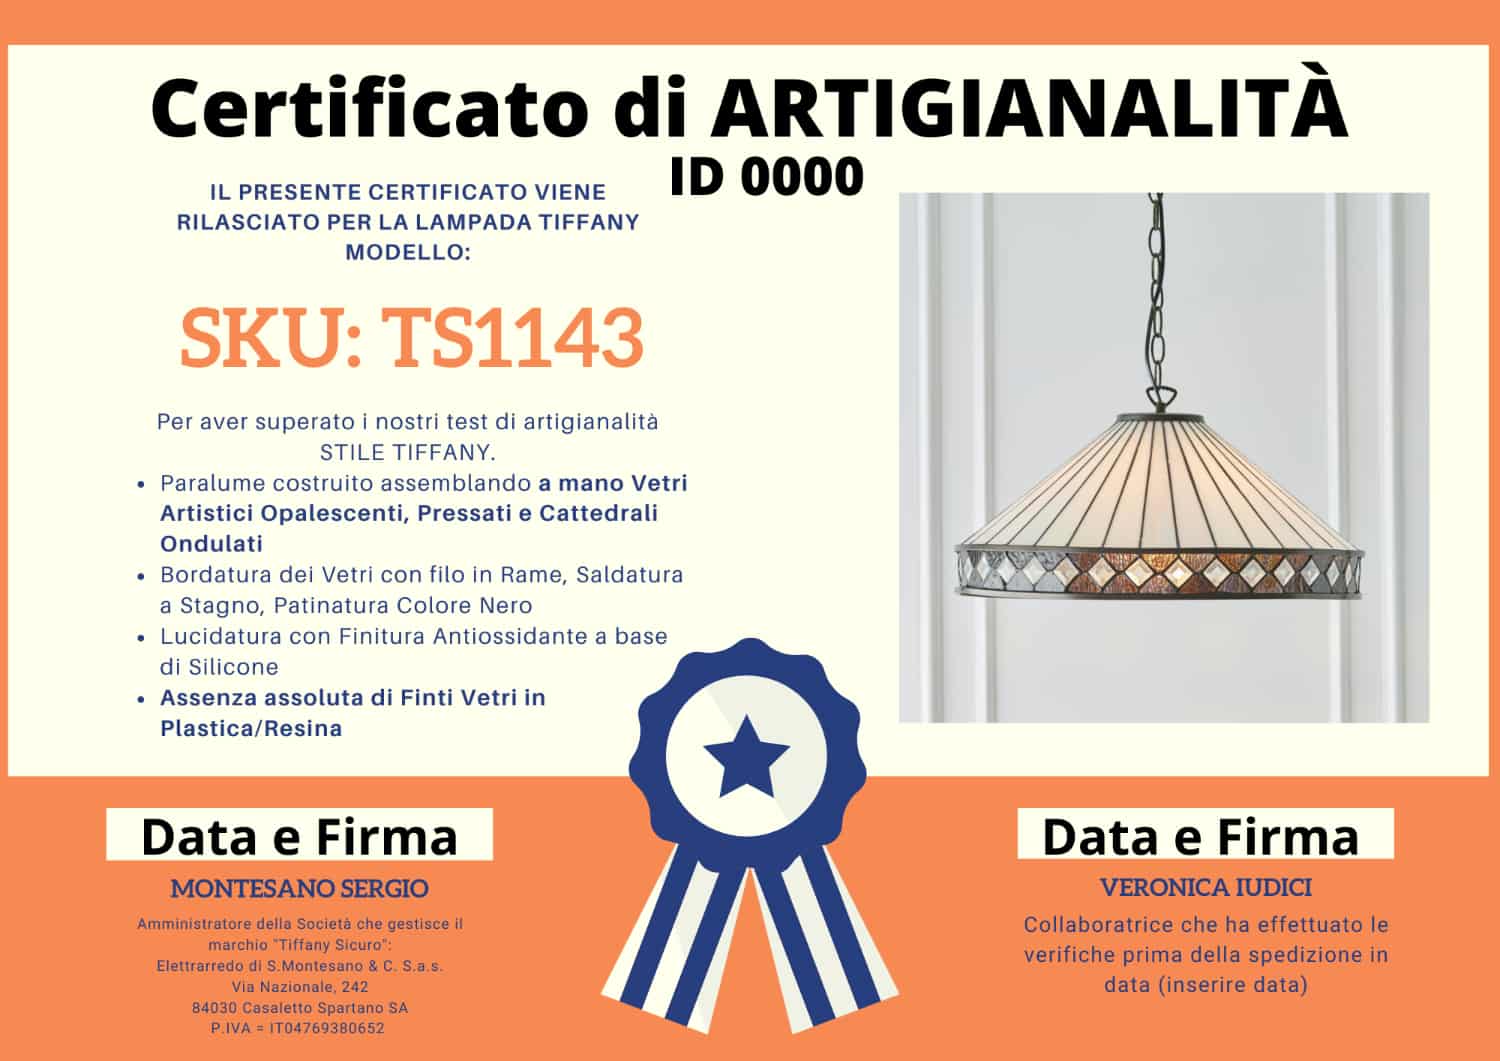 Lampadario Tiffany Moderno con Gemme, certificato